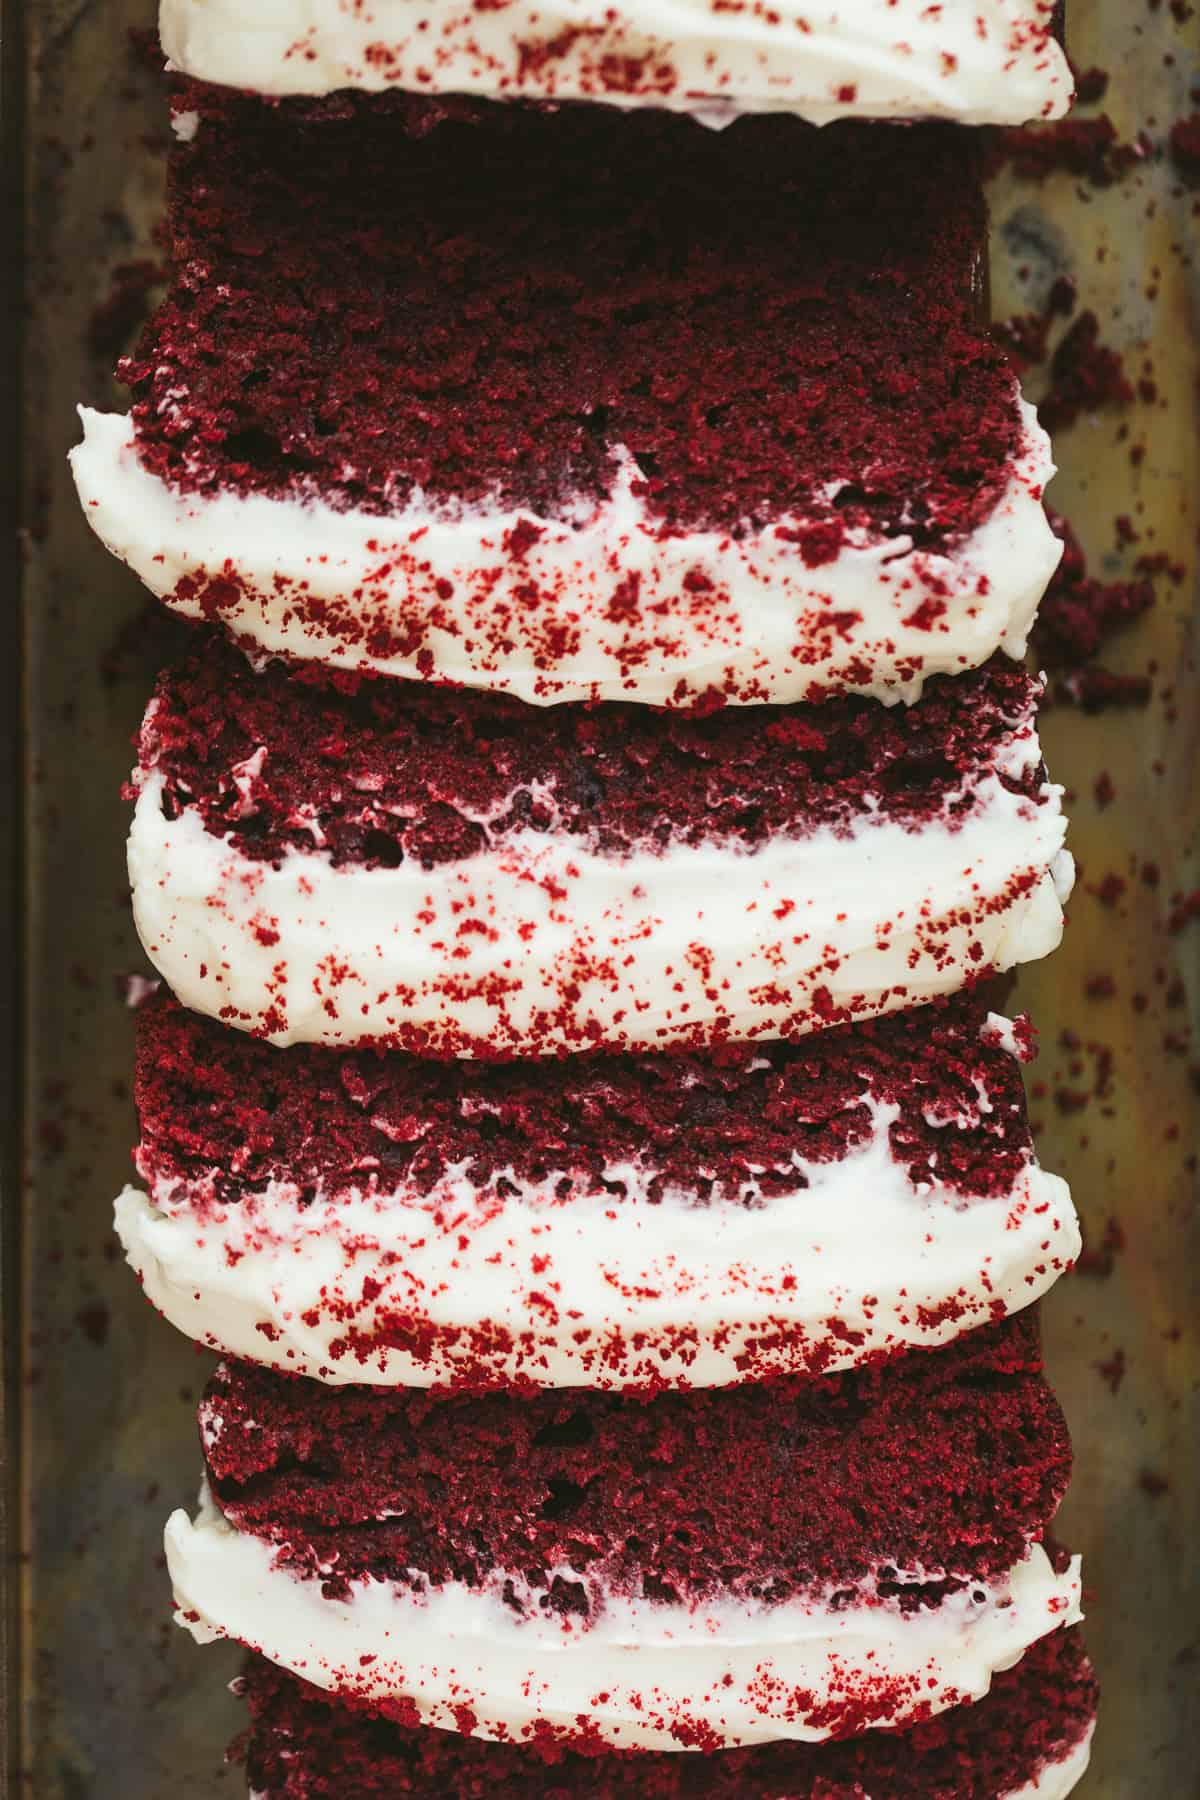 A sliced red velvet cake. 